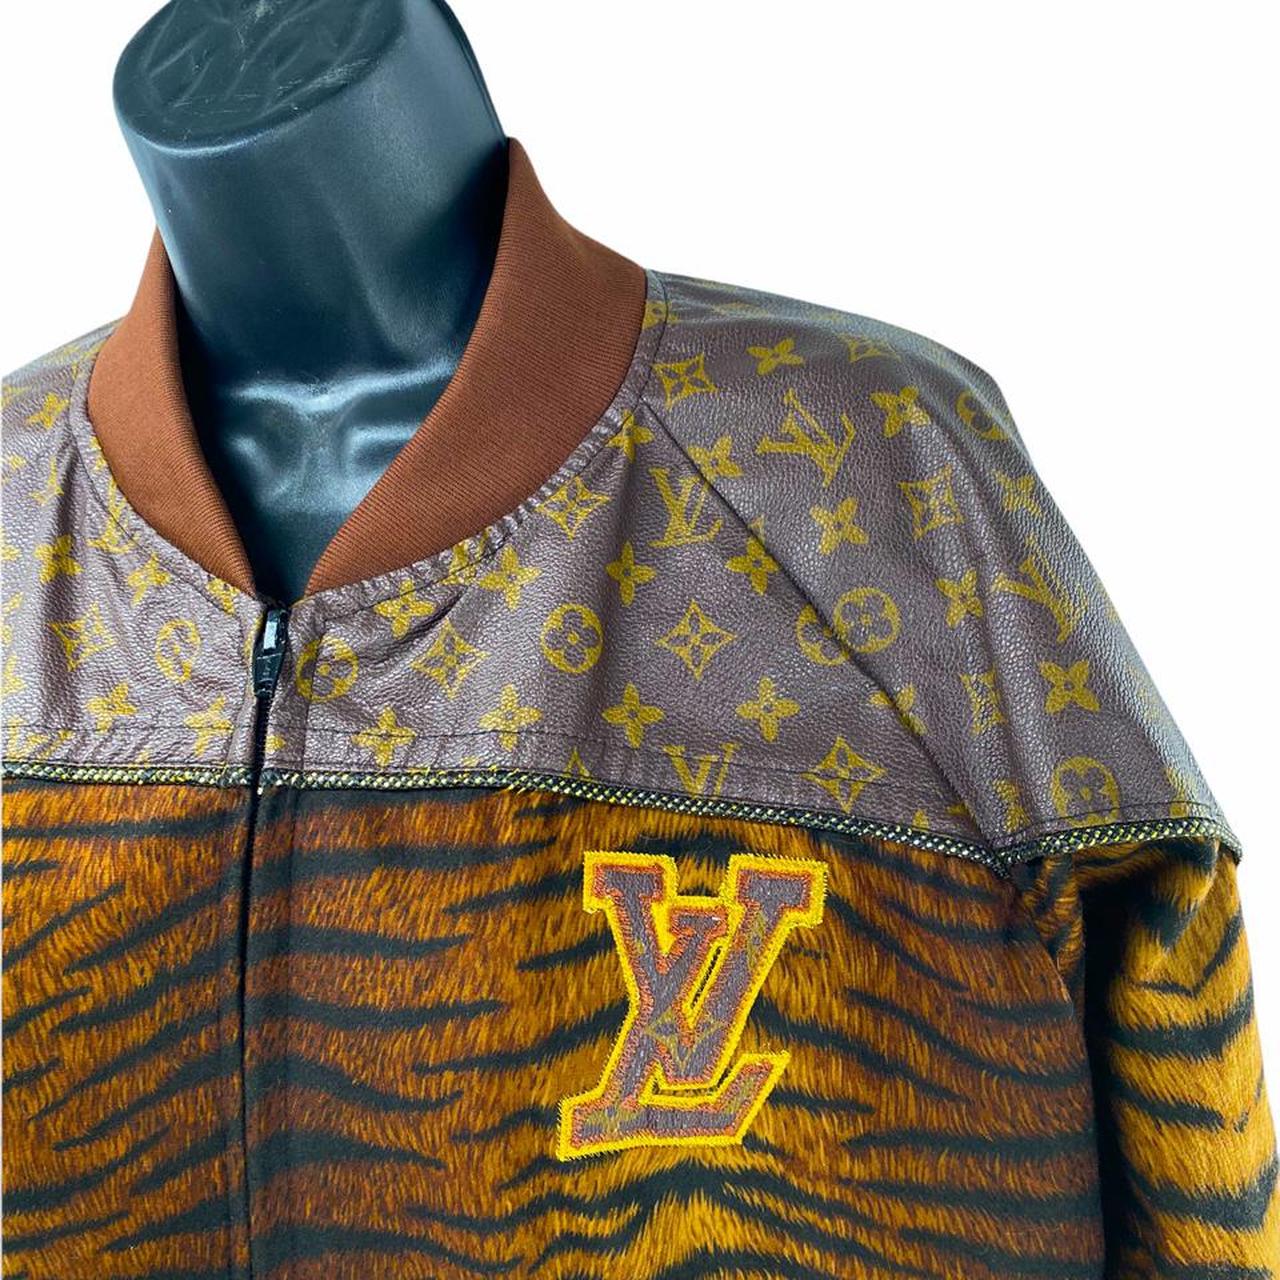 Archived Dreams® on Instagram: “Vintage Louis Vuitton Dapper Dan Jacket”